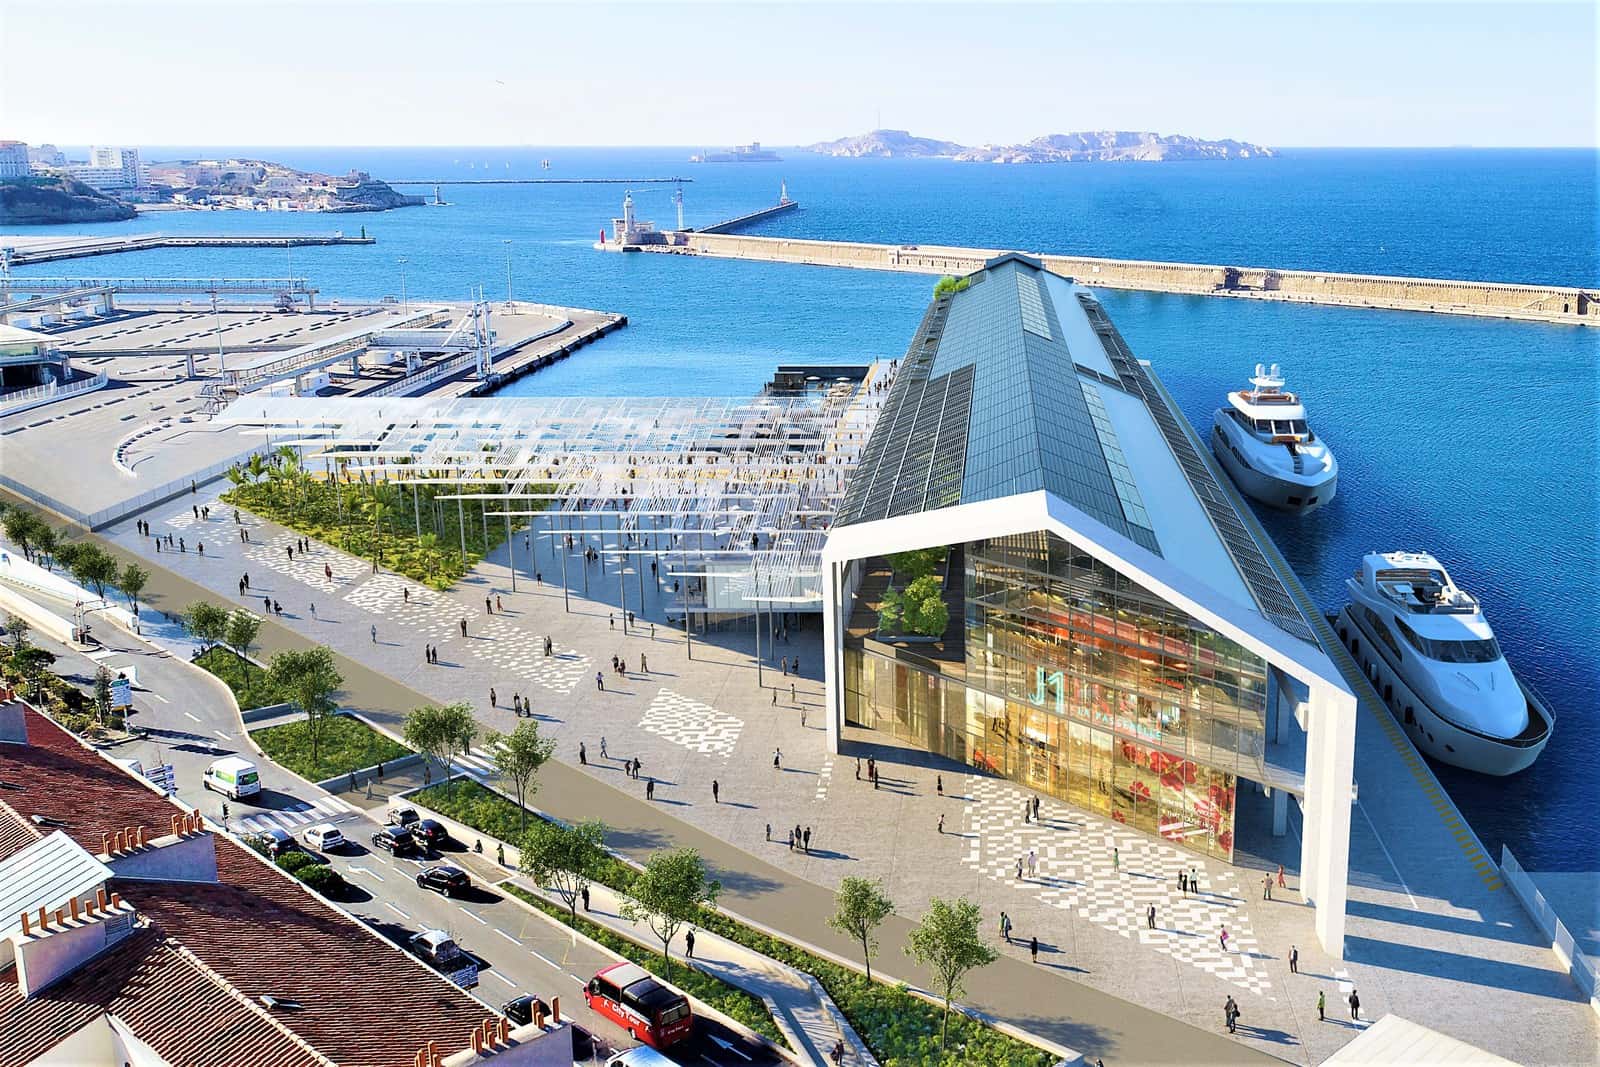 , Signature imminente pour le projet de transformation du J1, Made in Marseille